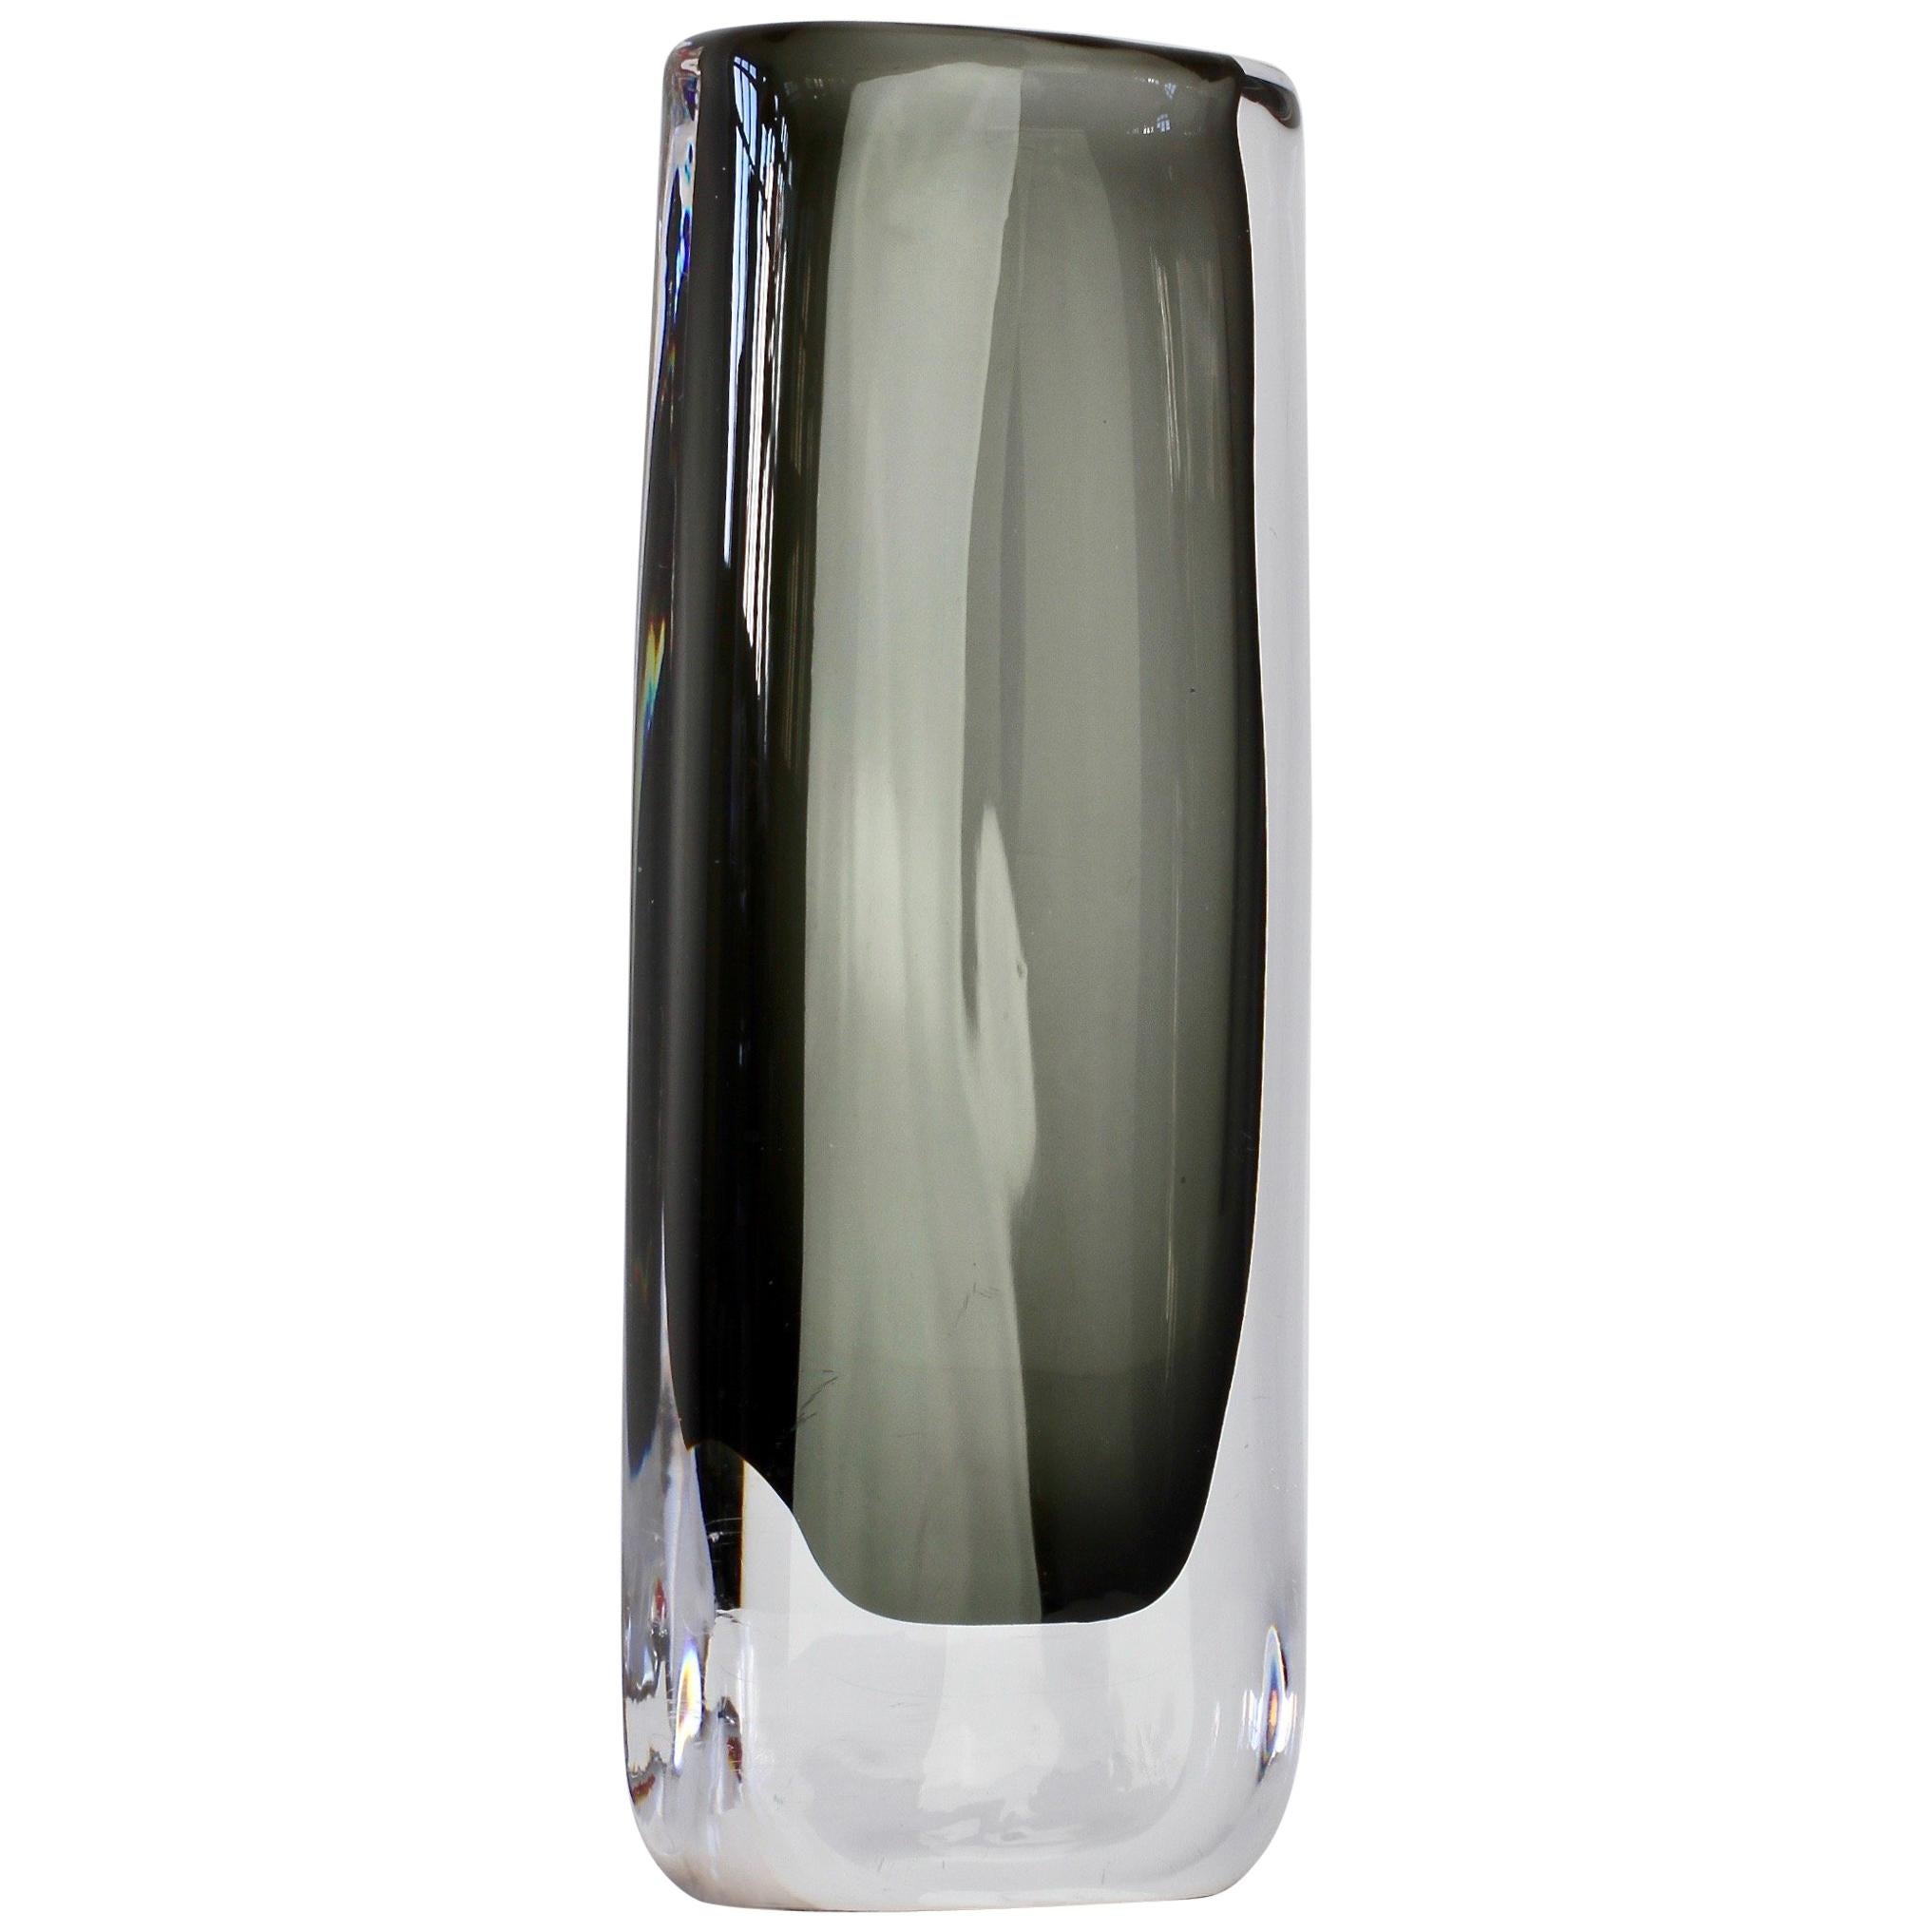 Tall 1950s Sommerso 'Dusk' Vase Signed by Nils Landberg for Orrefors Glass